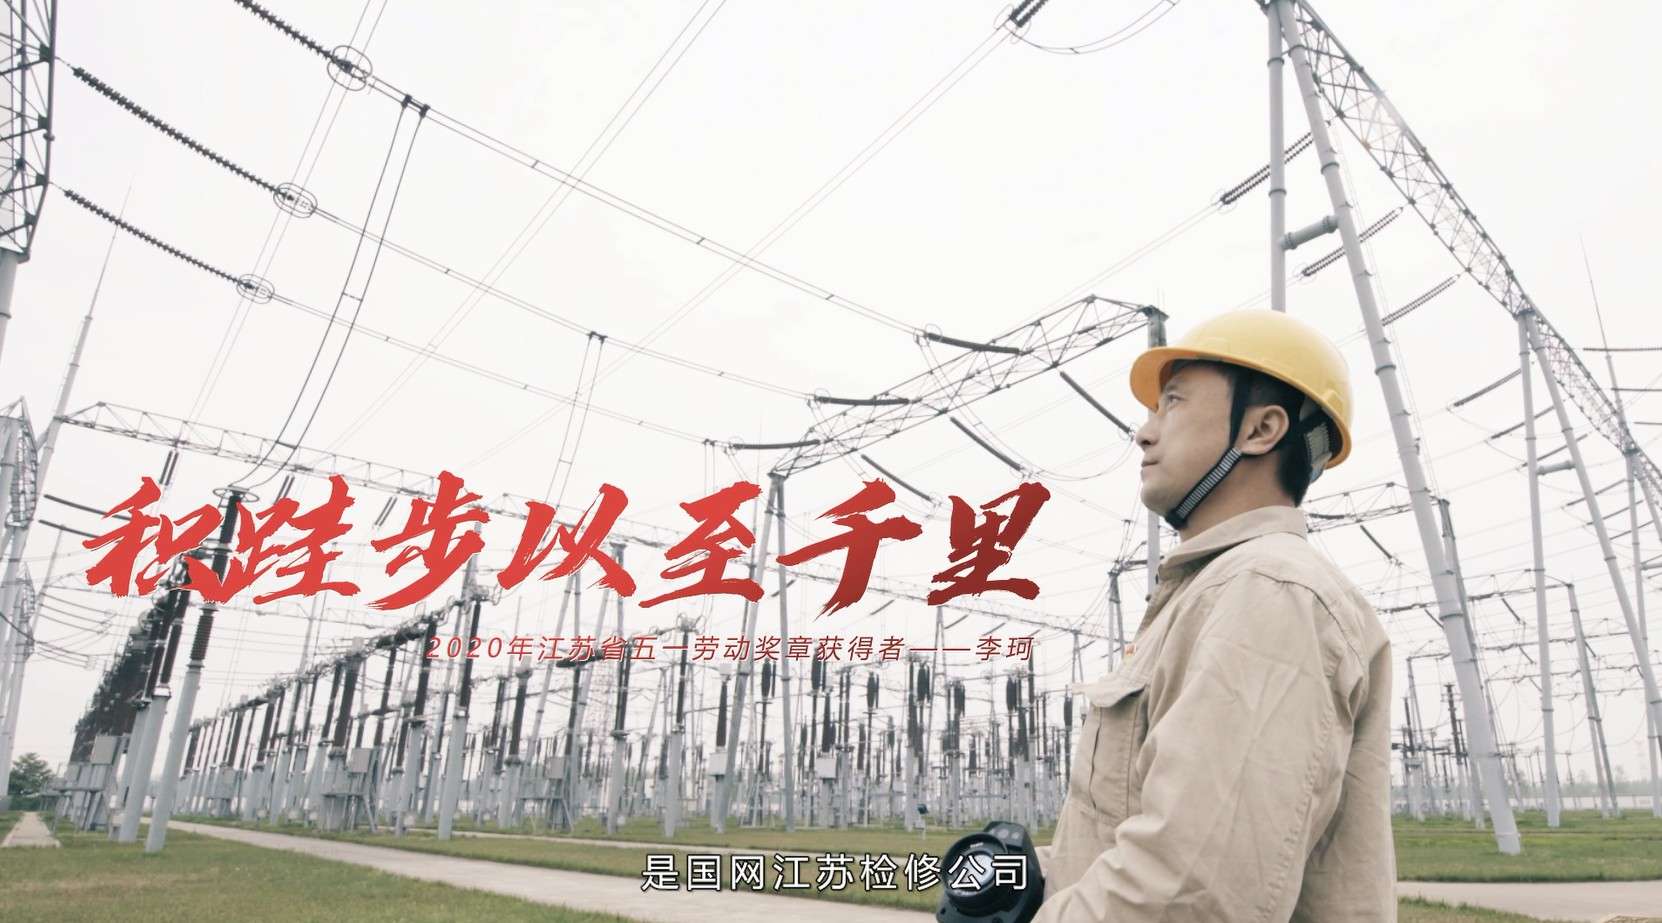 2020年国网江苏省电力有限公司检修分公司劳动模范